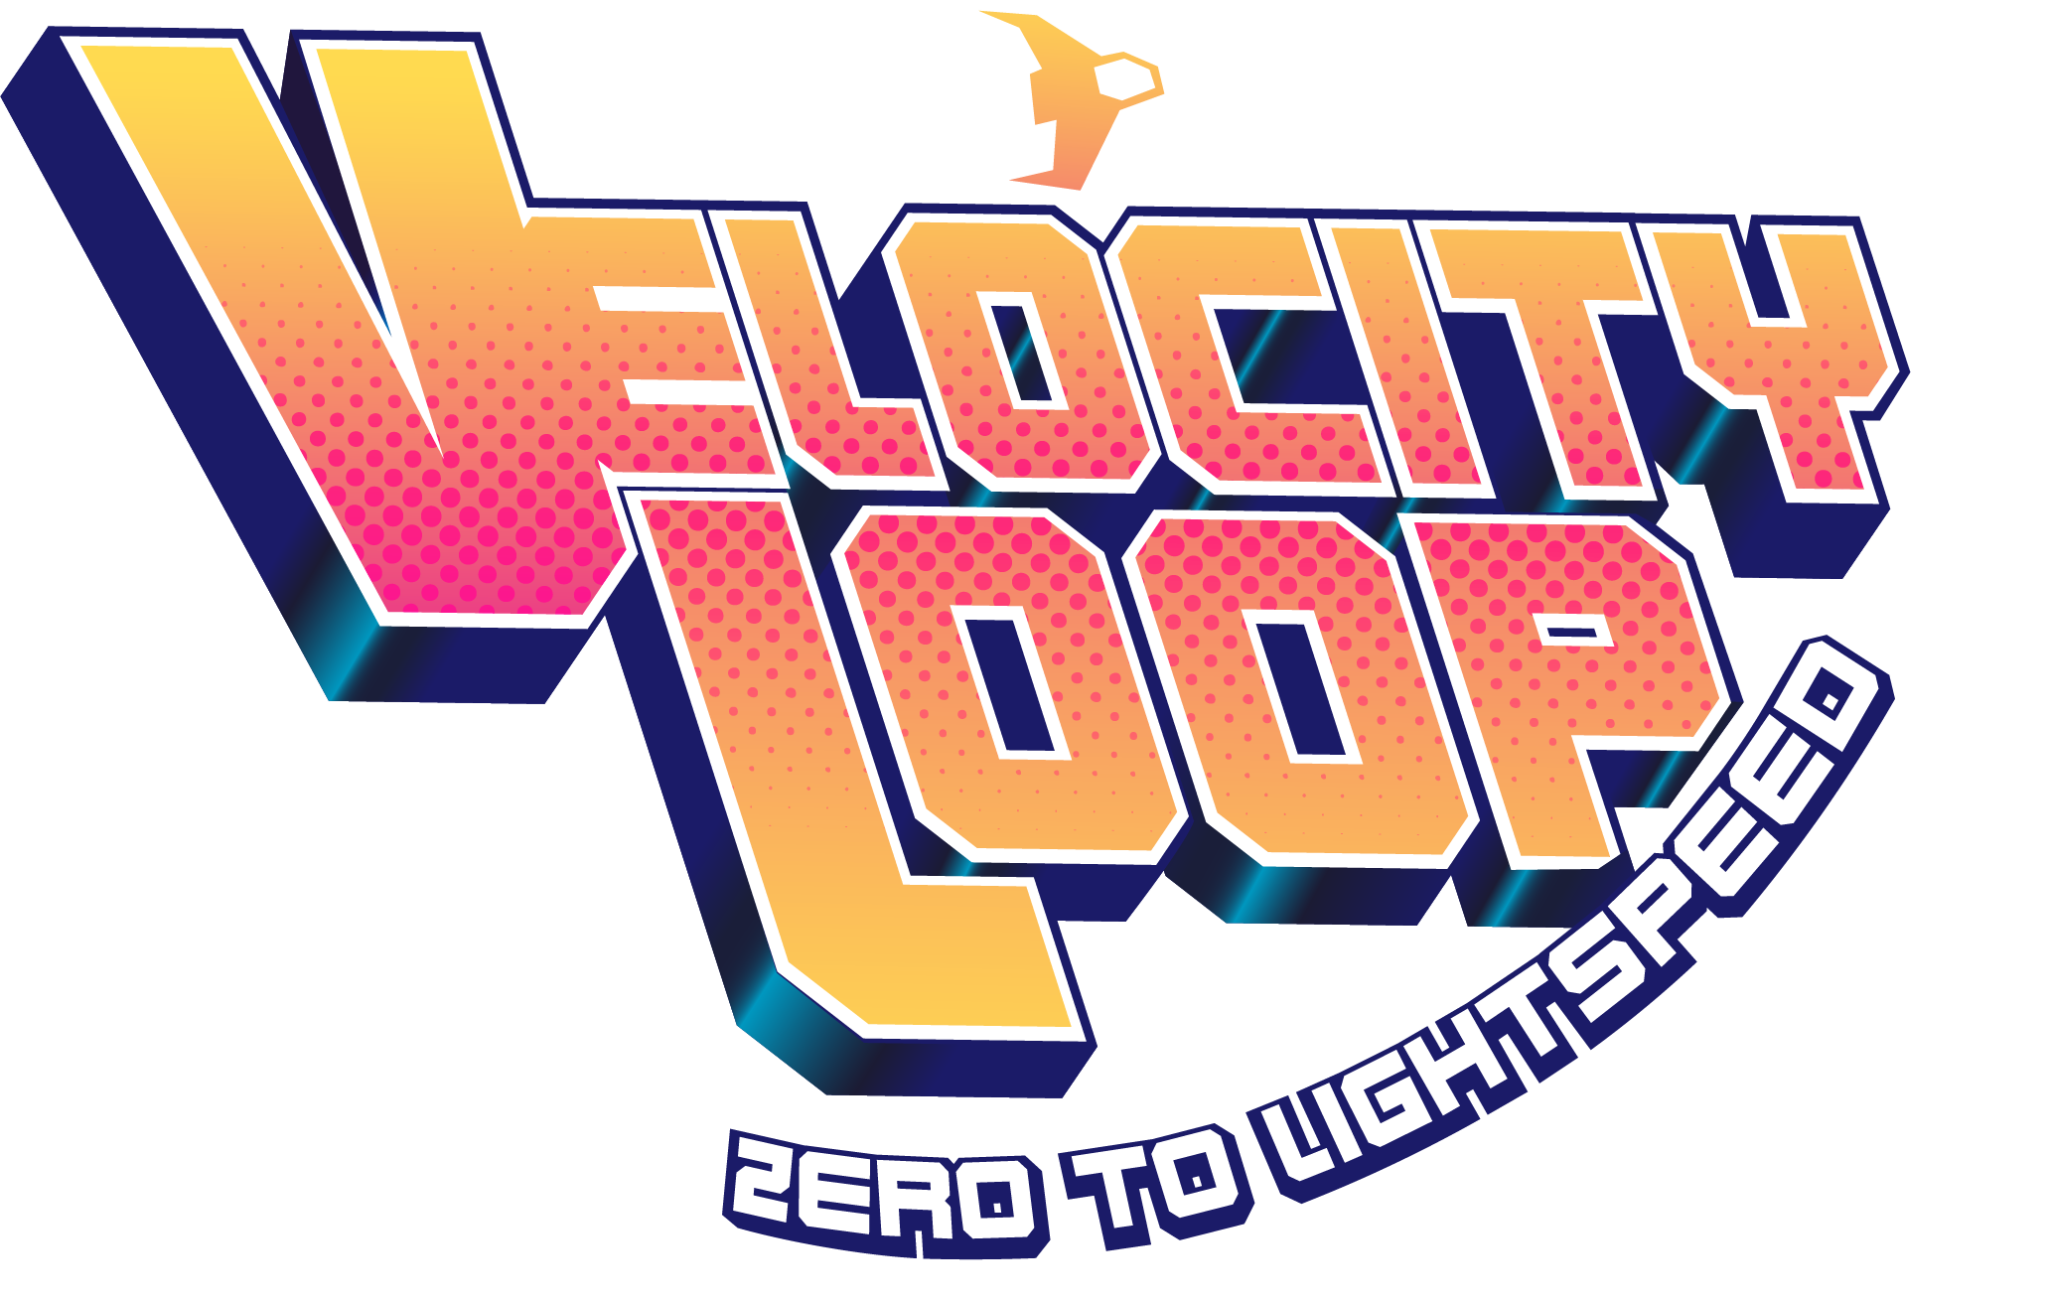 Velocity-loop-Full-logo-2048x1301-1.png